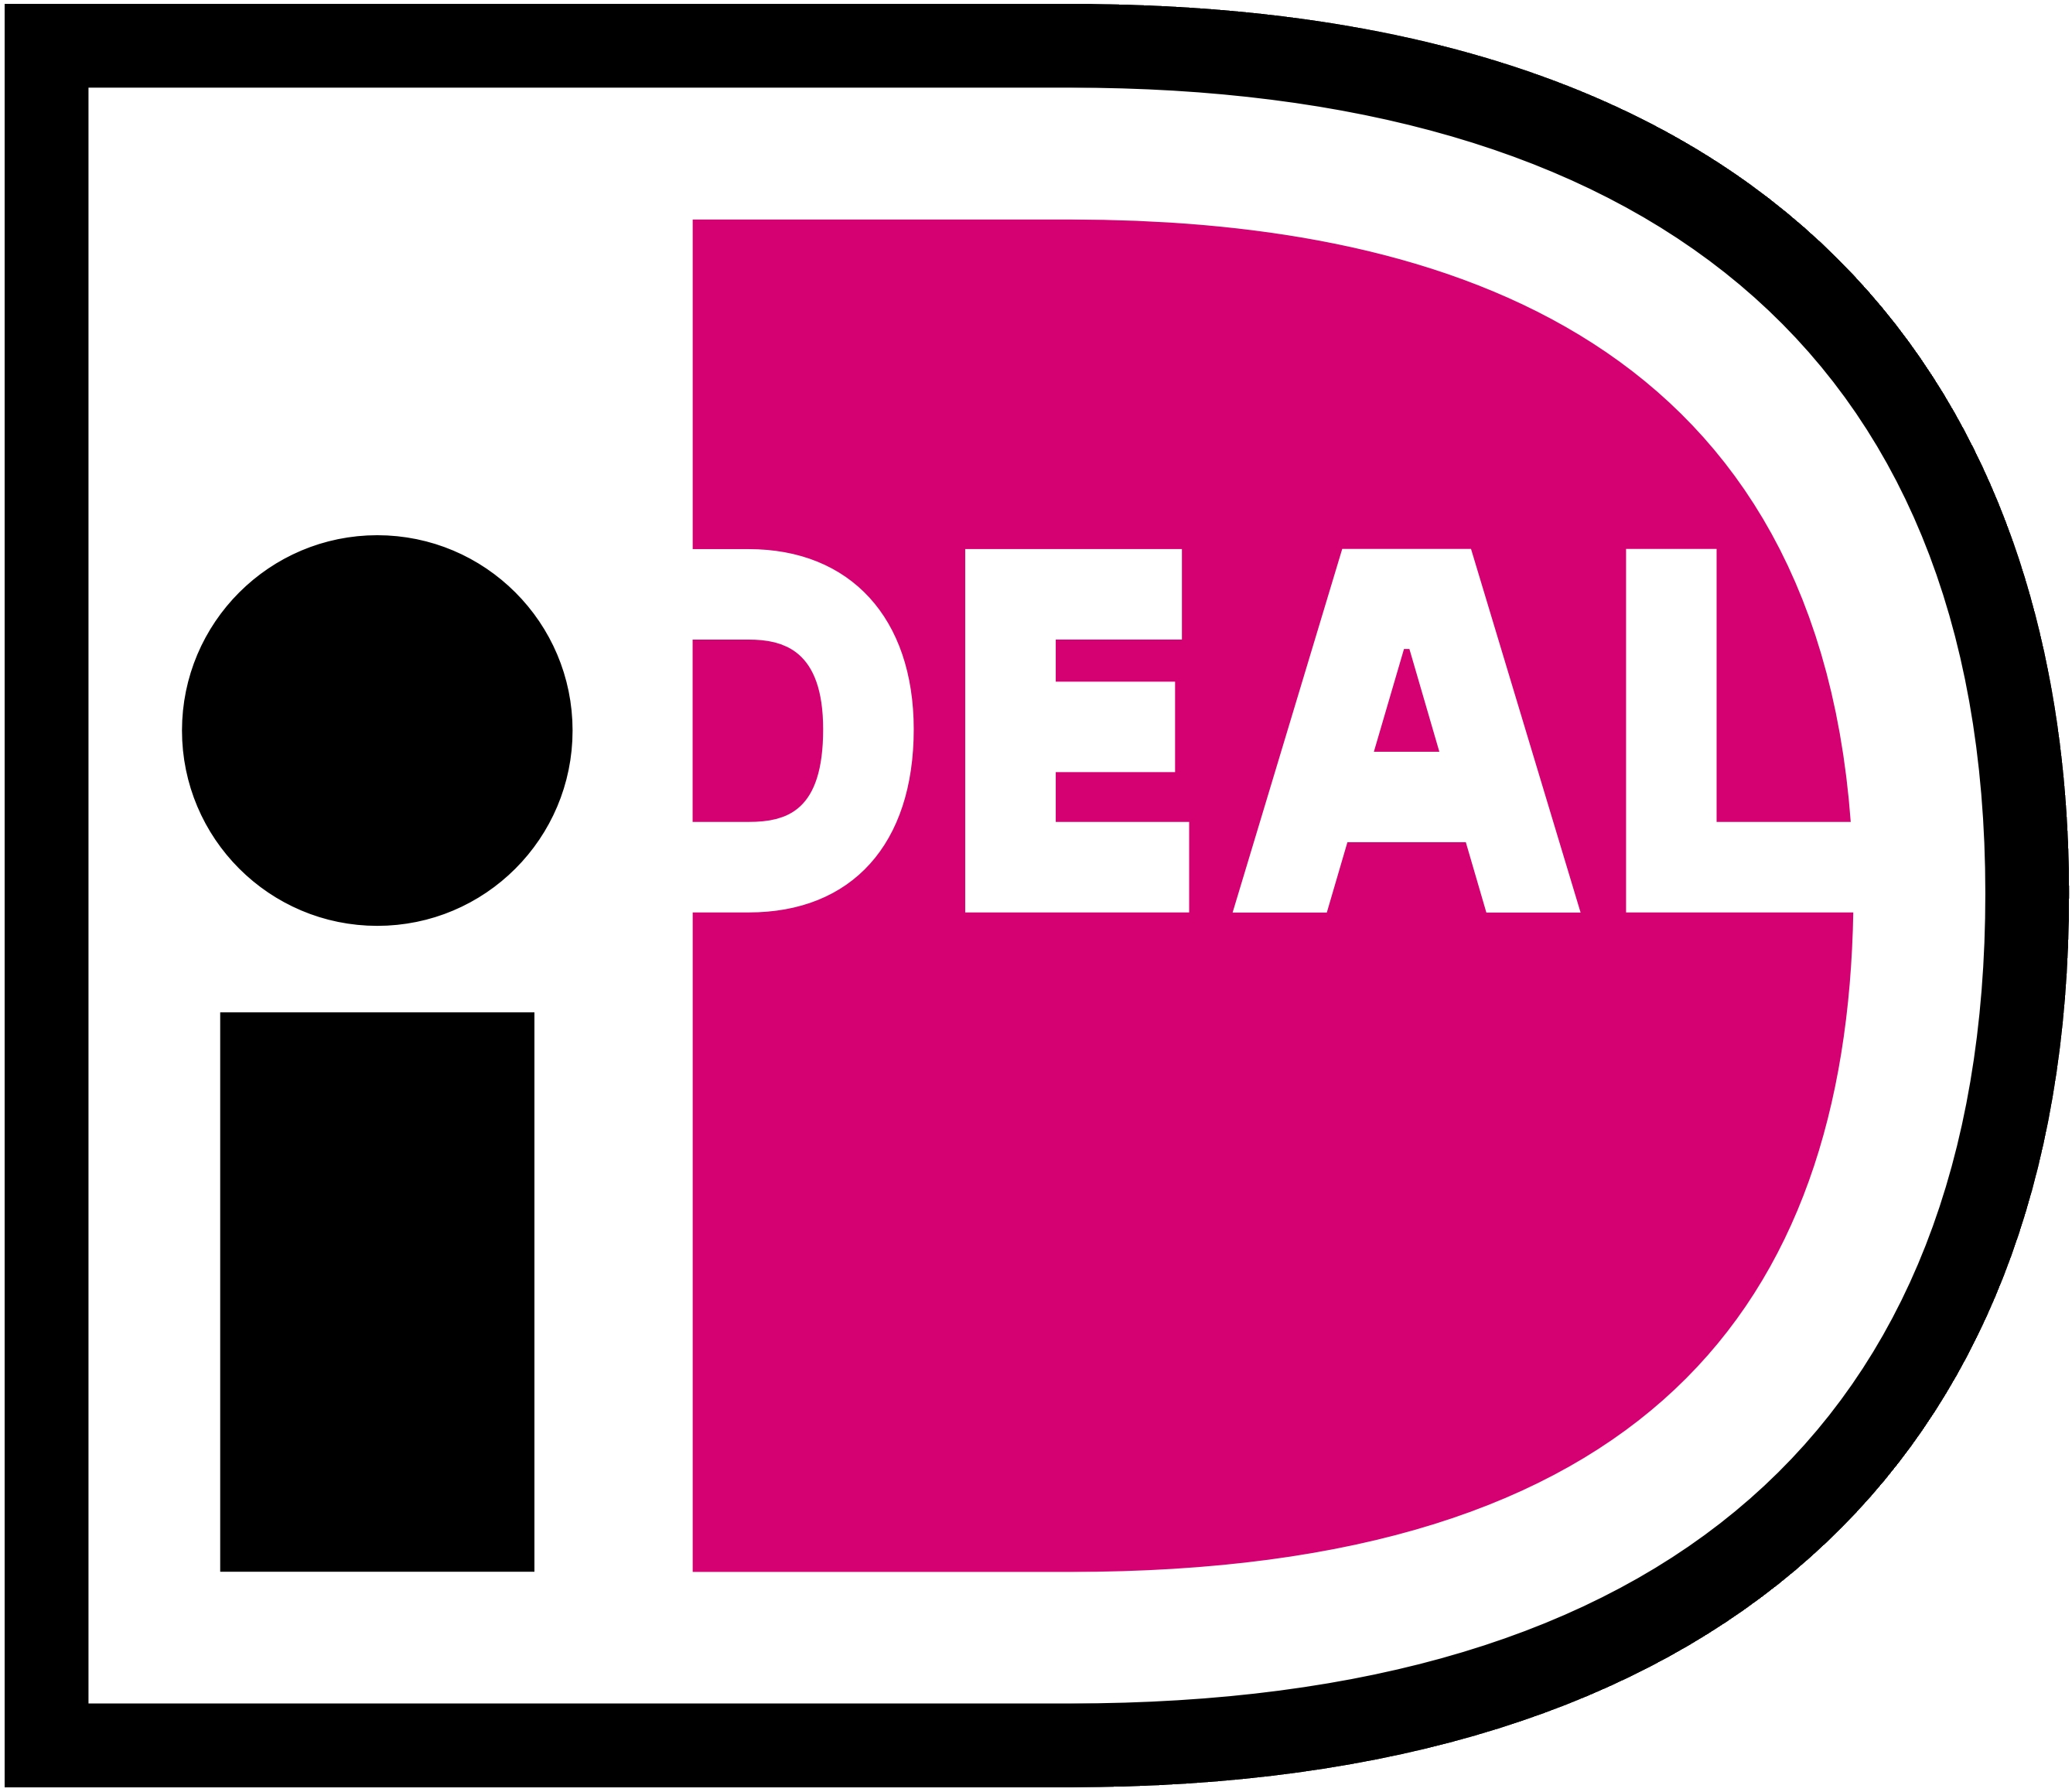 iDEAL is een online betaalmiddel Vertrouwd en veilig online betalen